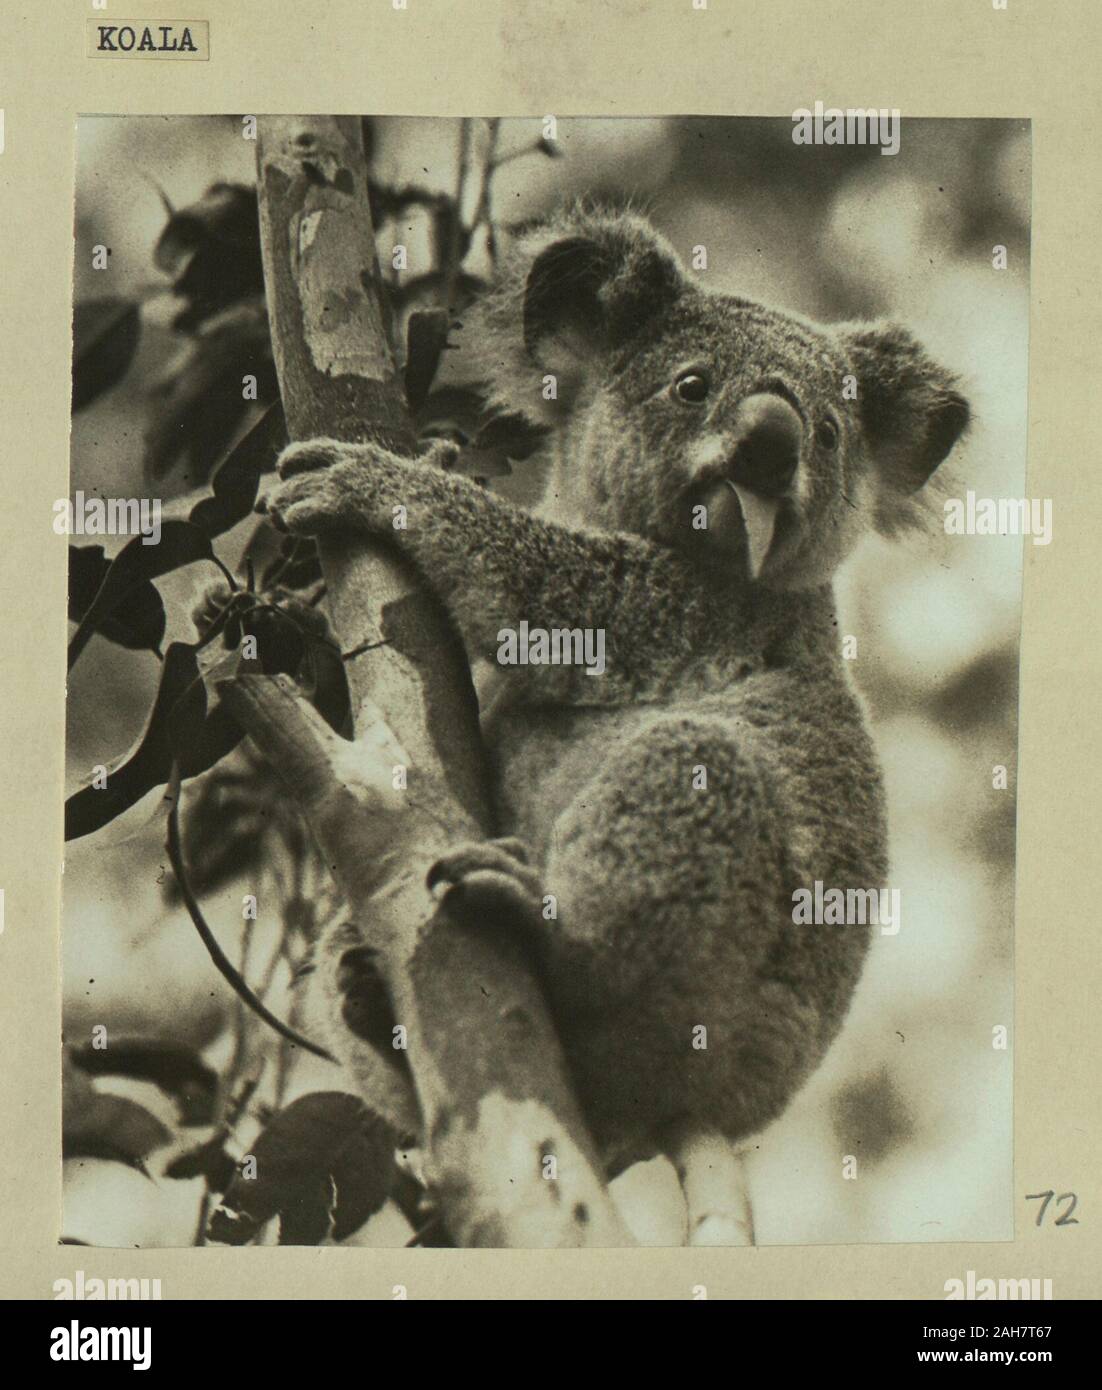 Australia, Koala bear eating leaves.Caption reads: Koala, 1925. 2005/010/1/2/72. Stock Photo